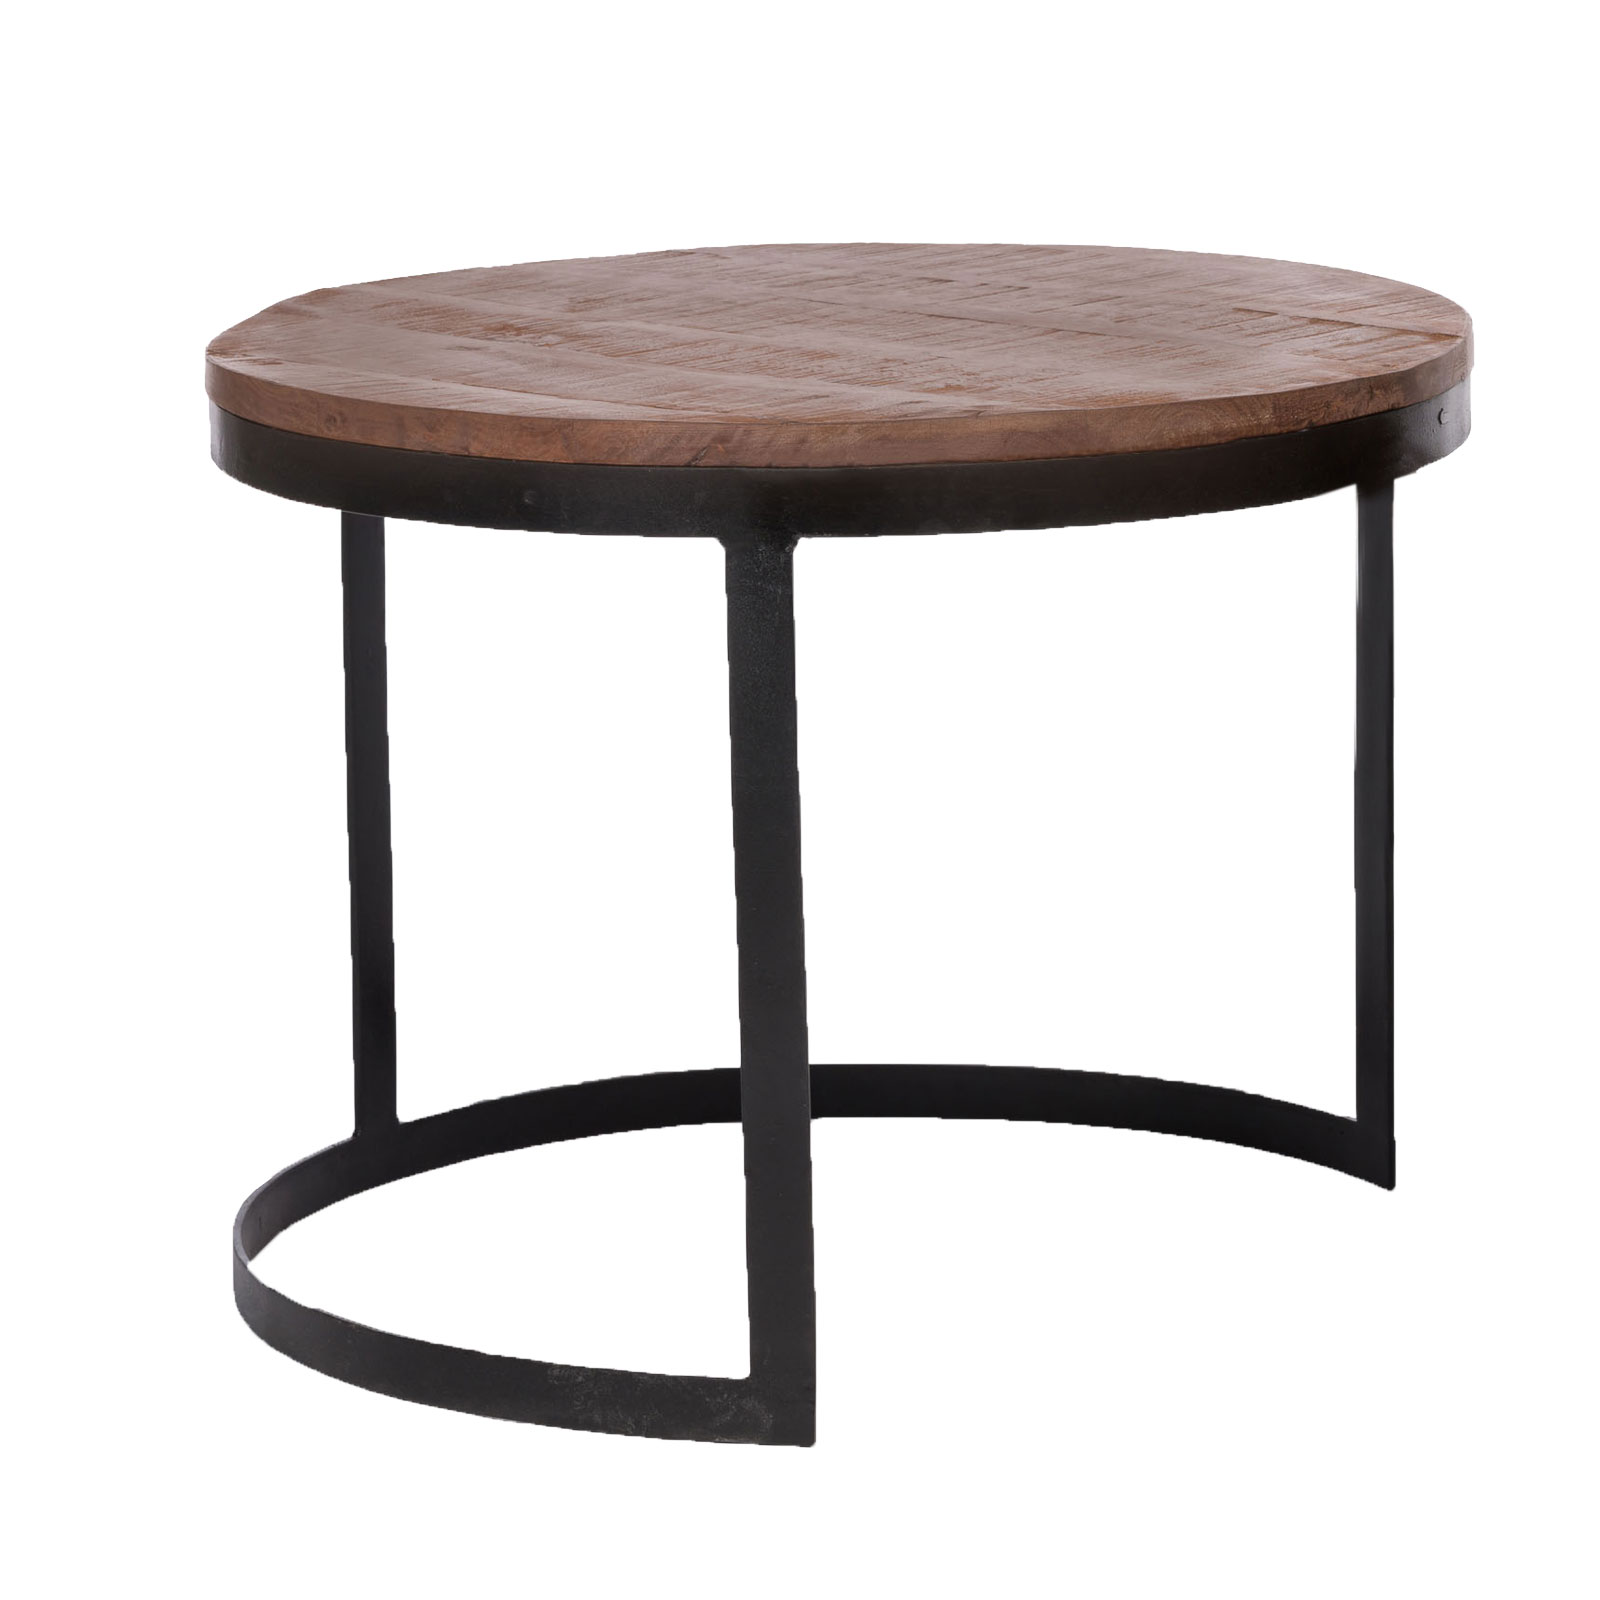 2. Wohnzimmer-Tisch rund Metall-Gestell Casamia Set schwarzmatt | Wahl Beistelltisch 2er Austin Couchtisch Satztisch Wohnen